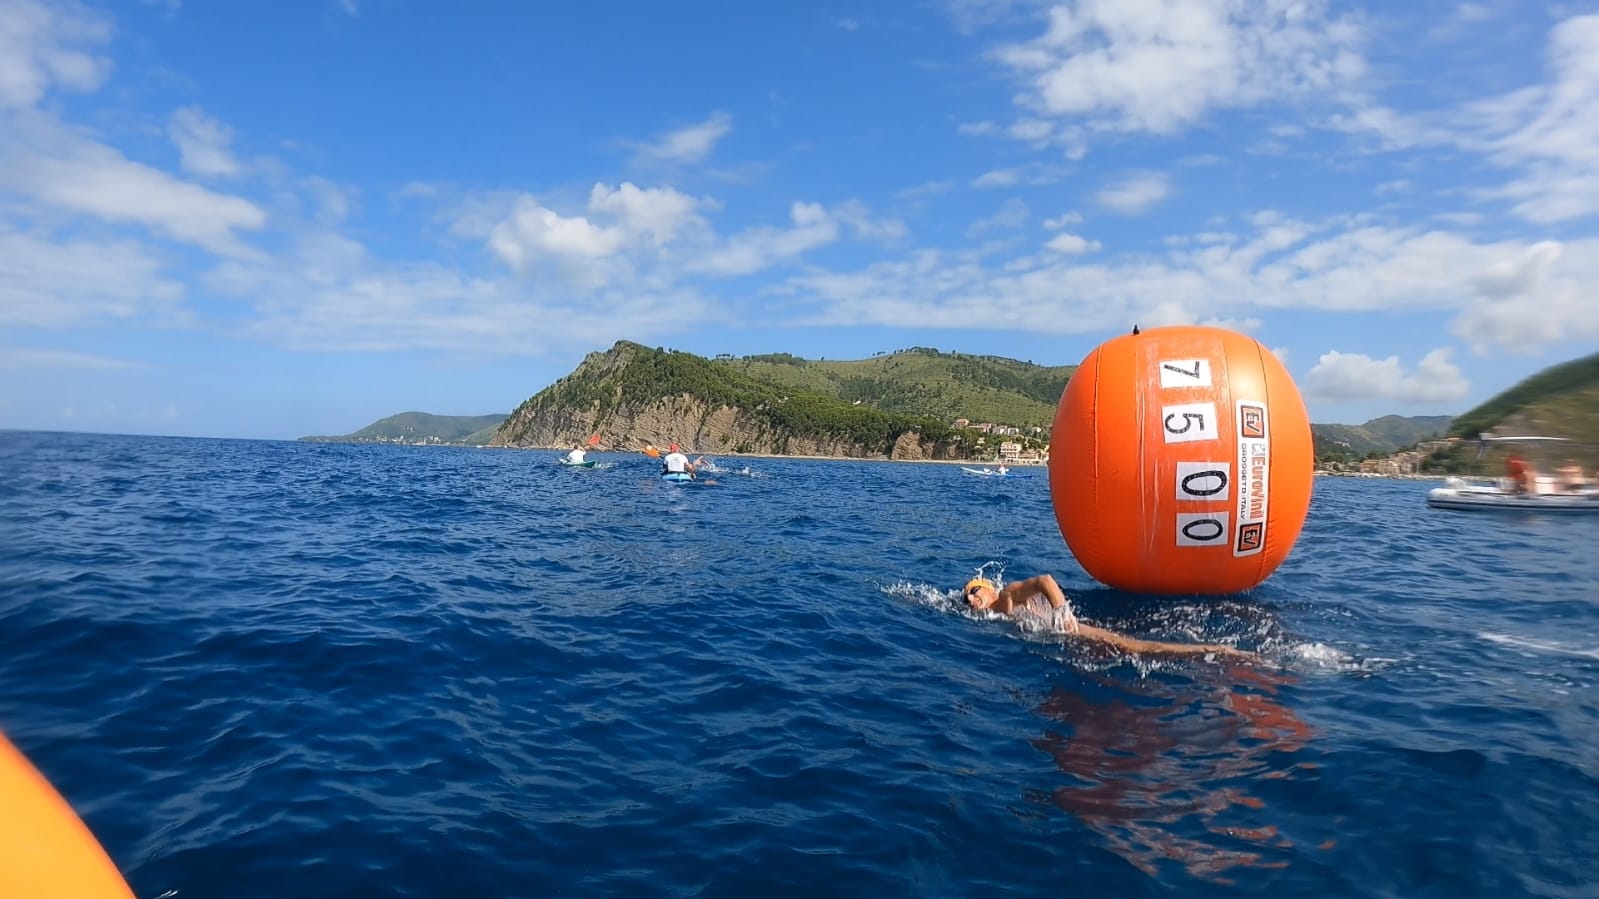 Nuoto in acque libere a Castellabate: oltre duecento nuotatori in mare per celebrare i 20 anni di gare